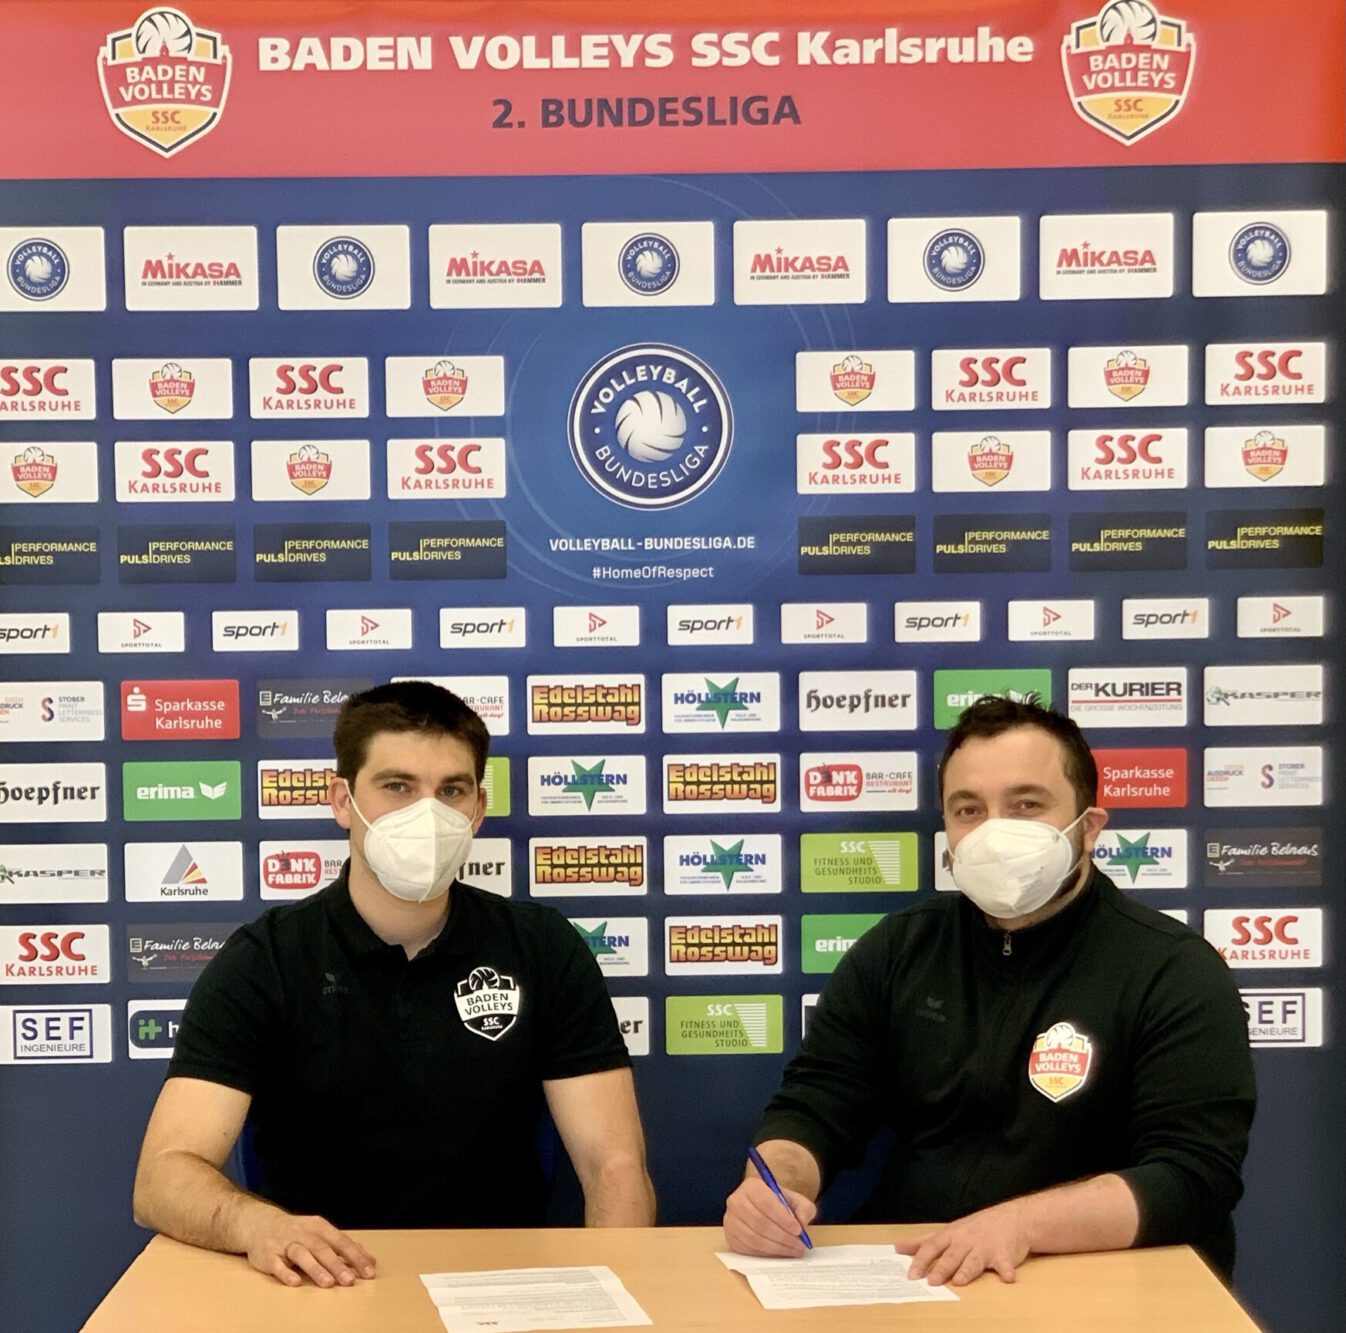 Antonio Bonelli hat für zwei weitere Jahre bei den BADEN VOLLEYS SSC Karlsruhe unterschrieben. (Fotograf: SSC Karlsruhe)